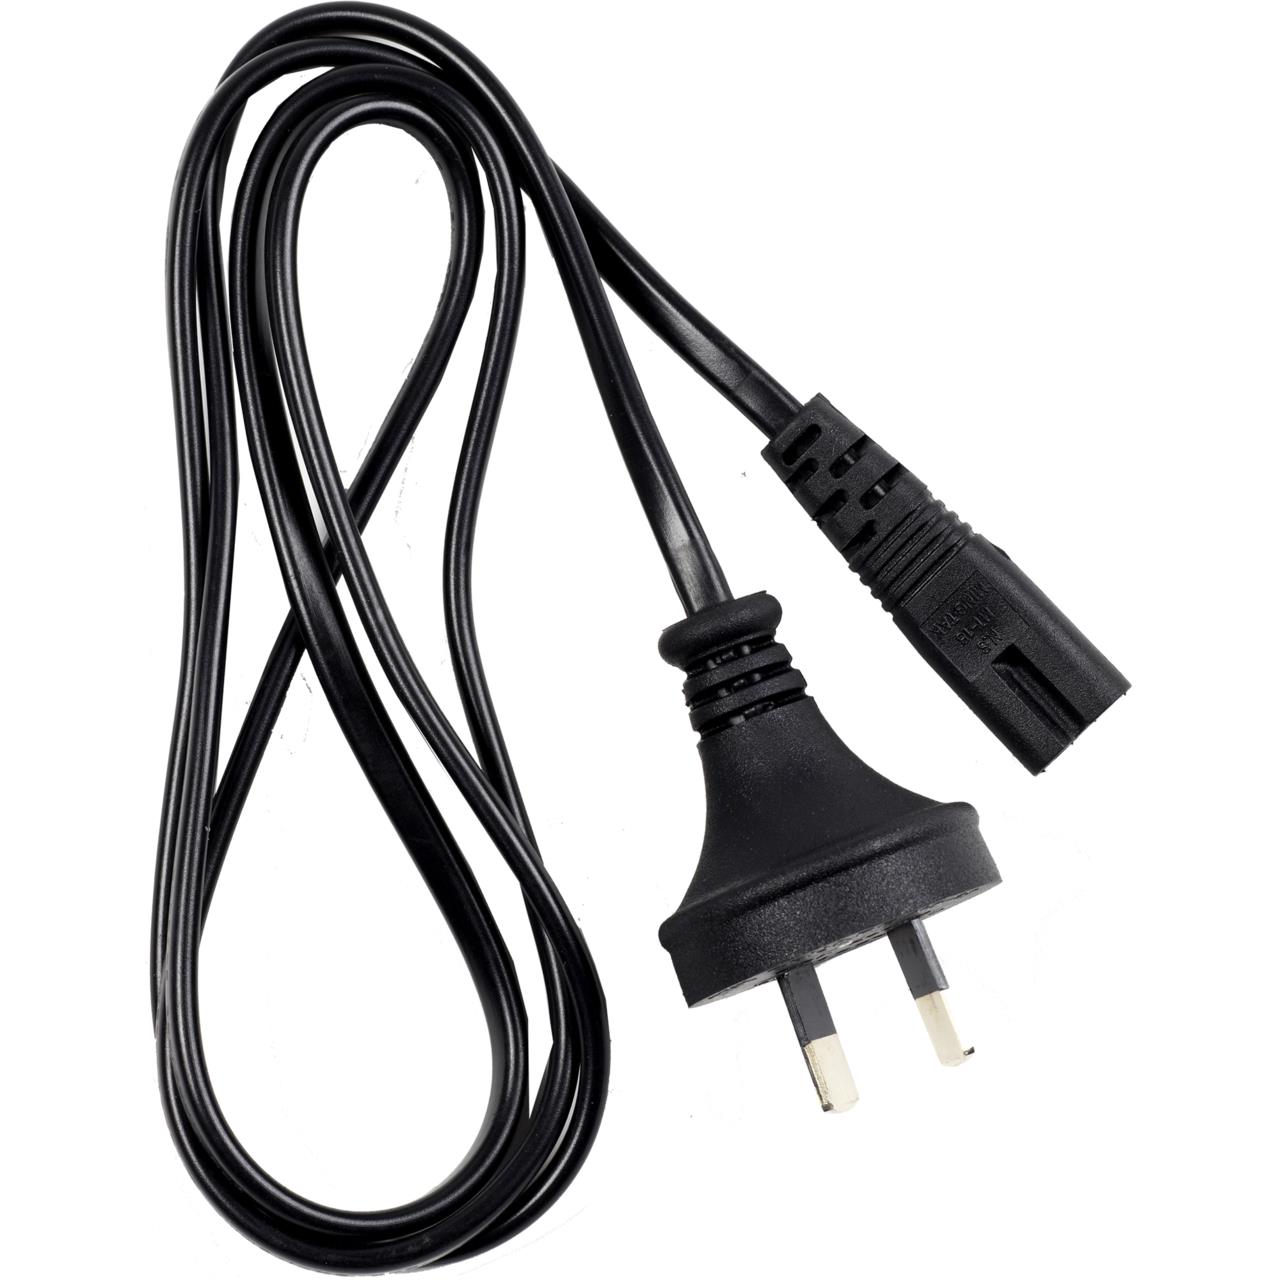 Buy Profoto Power Cable C7 online | Profoto (US)